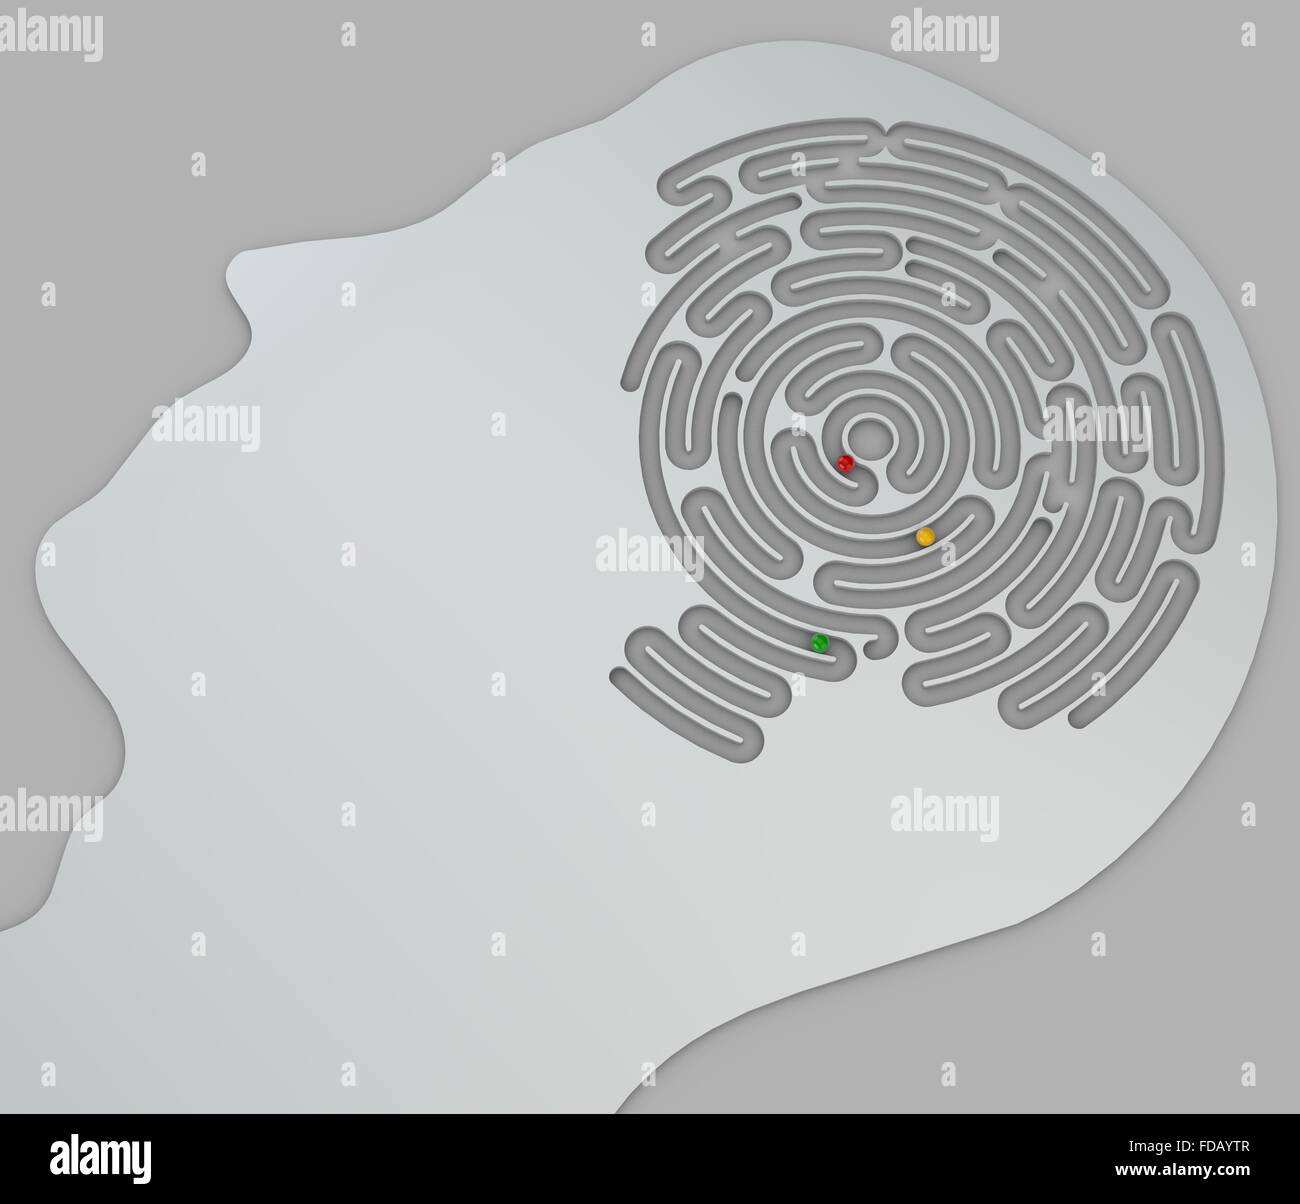 Gehirn-förmigen Labyrinth in einem Kopf im Profil, Seitenansicht. Abschnitt ein Gehirn-förmigen Labyrinth Stockfoto